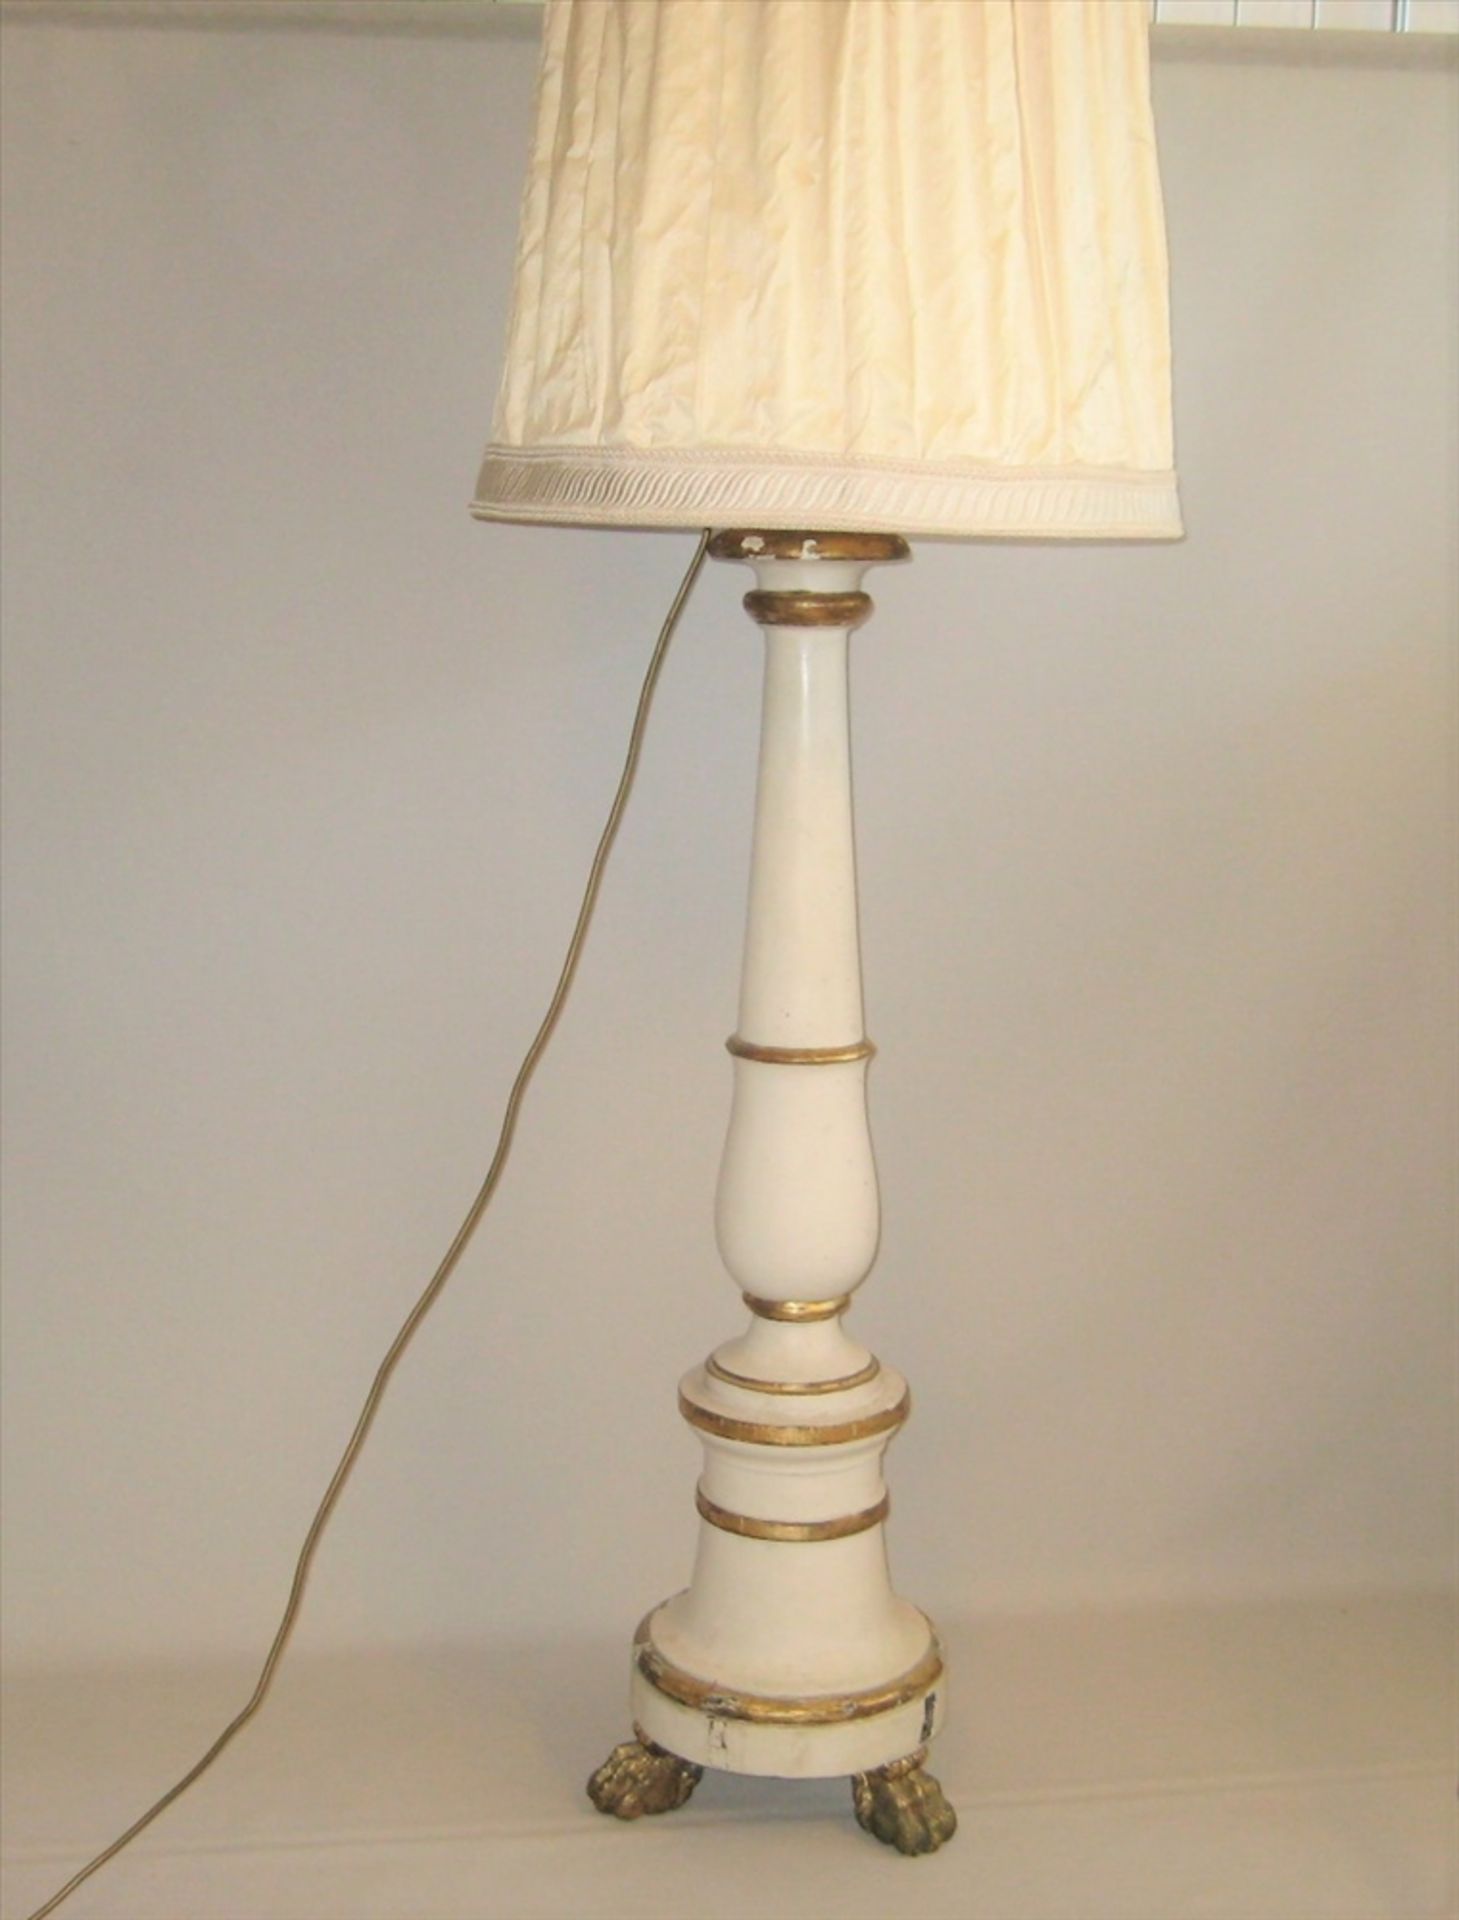 Stehlampe aus einem Kirchenkerzenleuchter gefertigt, 19. Jahrhundert, Holz Weiß und goldfarben